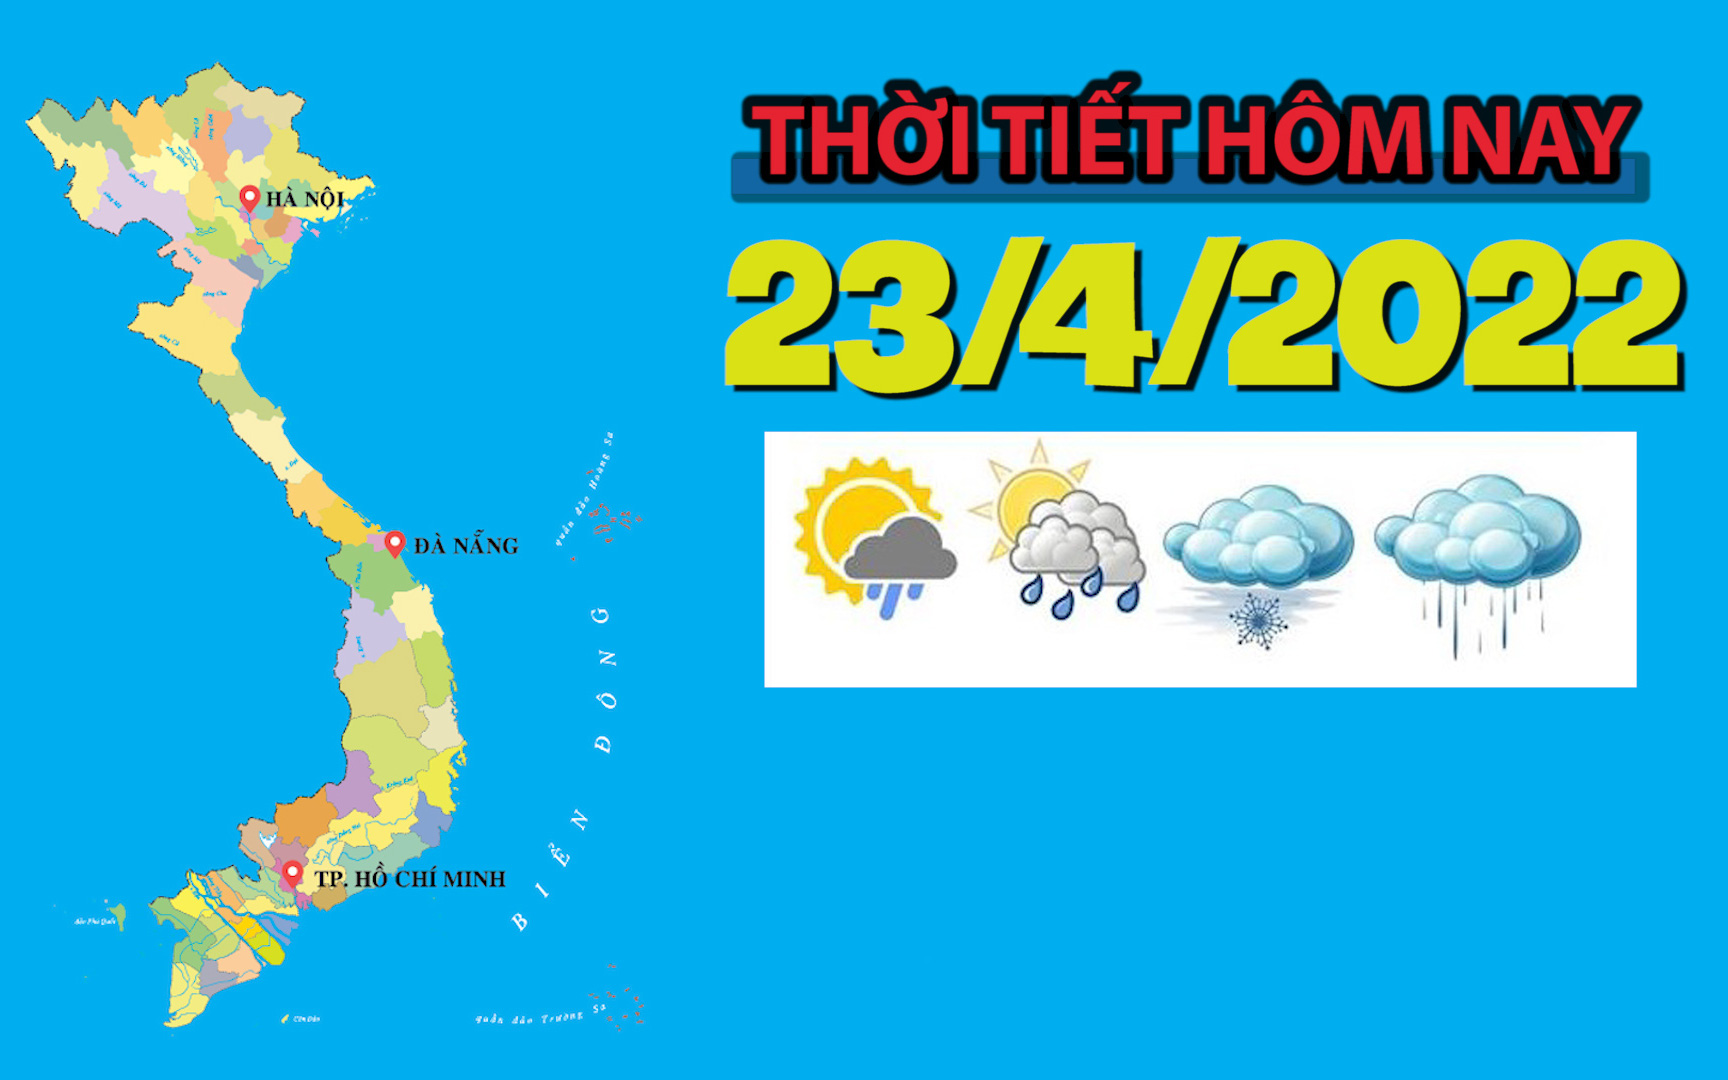 Thời tiết hôm nay 23/4/2022: Vùng núi phía Bắc miền Trung và Nam Bộ có nắng nóng với nhiệt độ cao nhất 35 độ C